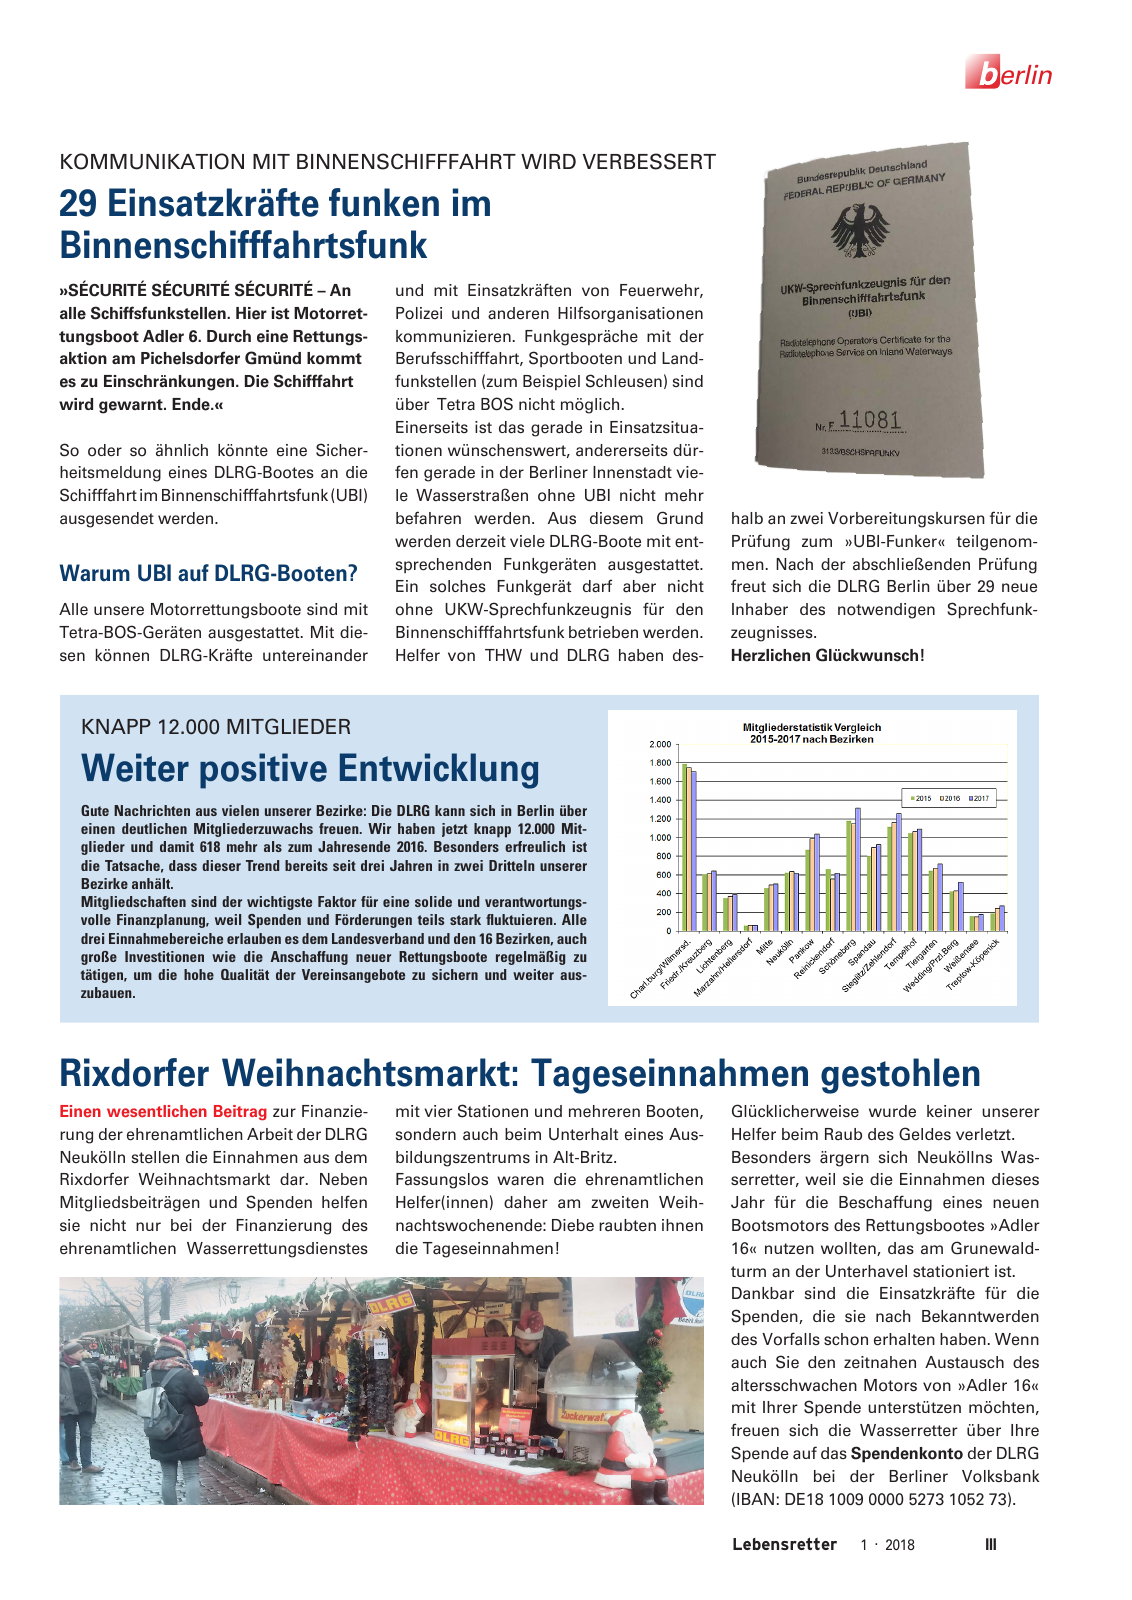 Vorschau Lebensretter 1/2018 - Regionalausgabe Berlin Seite 5